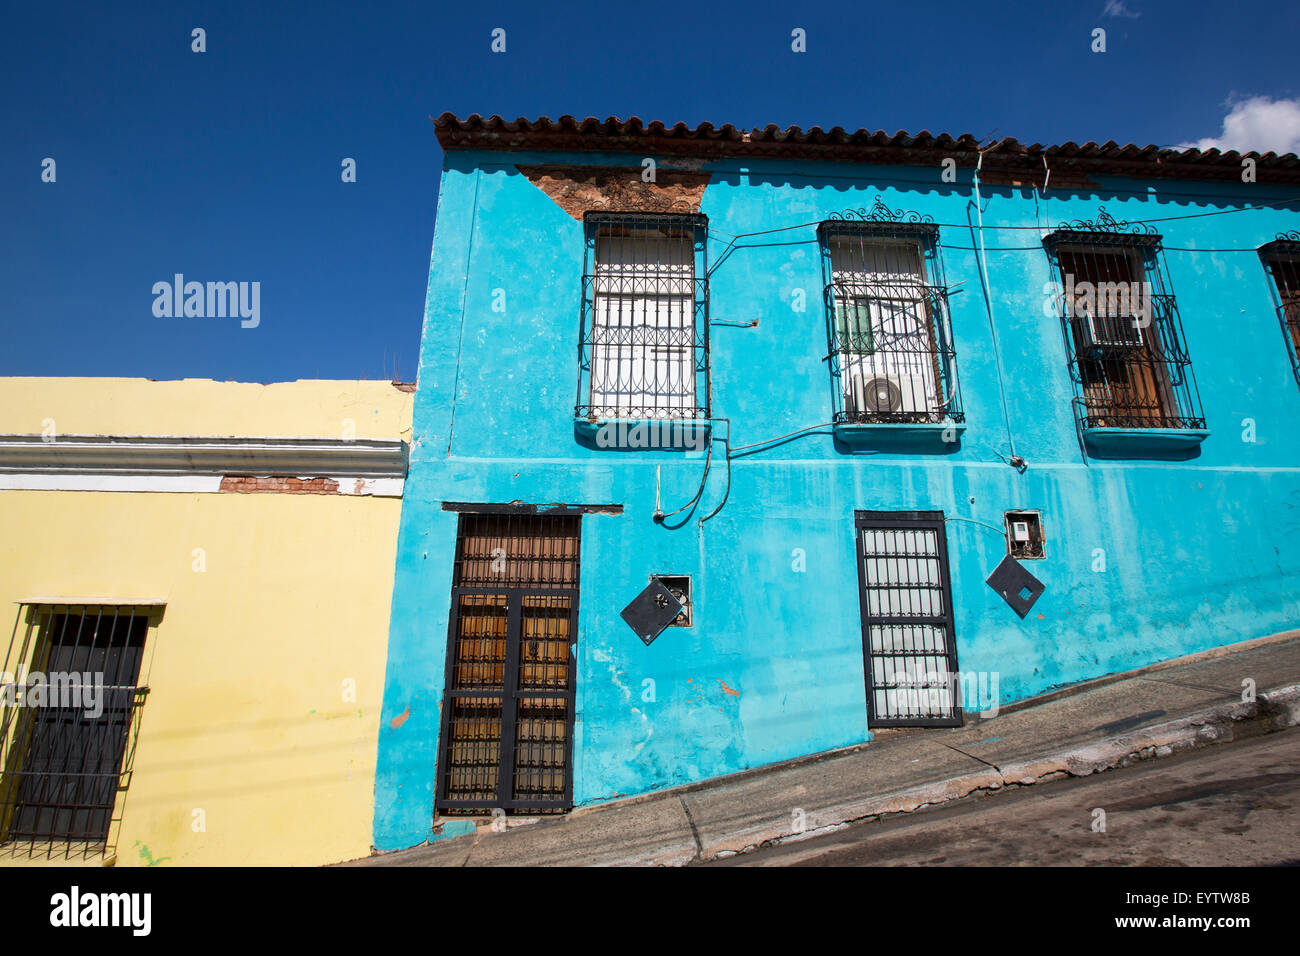 Koloniale Altstadt. Venezuela, Ciudad Bolivar ist eine der schönsten Kolonialstädte in Venezuela. Stockfoto